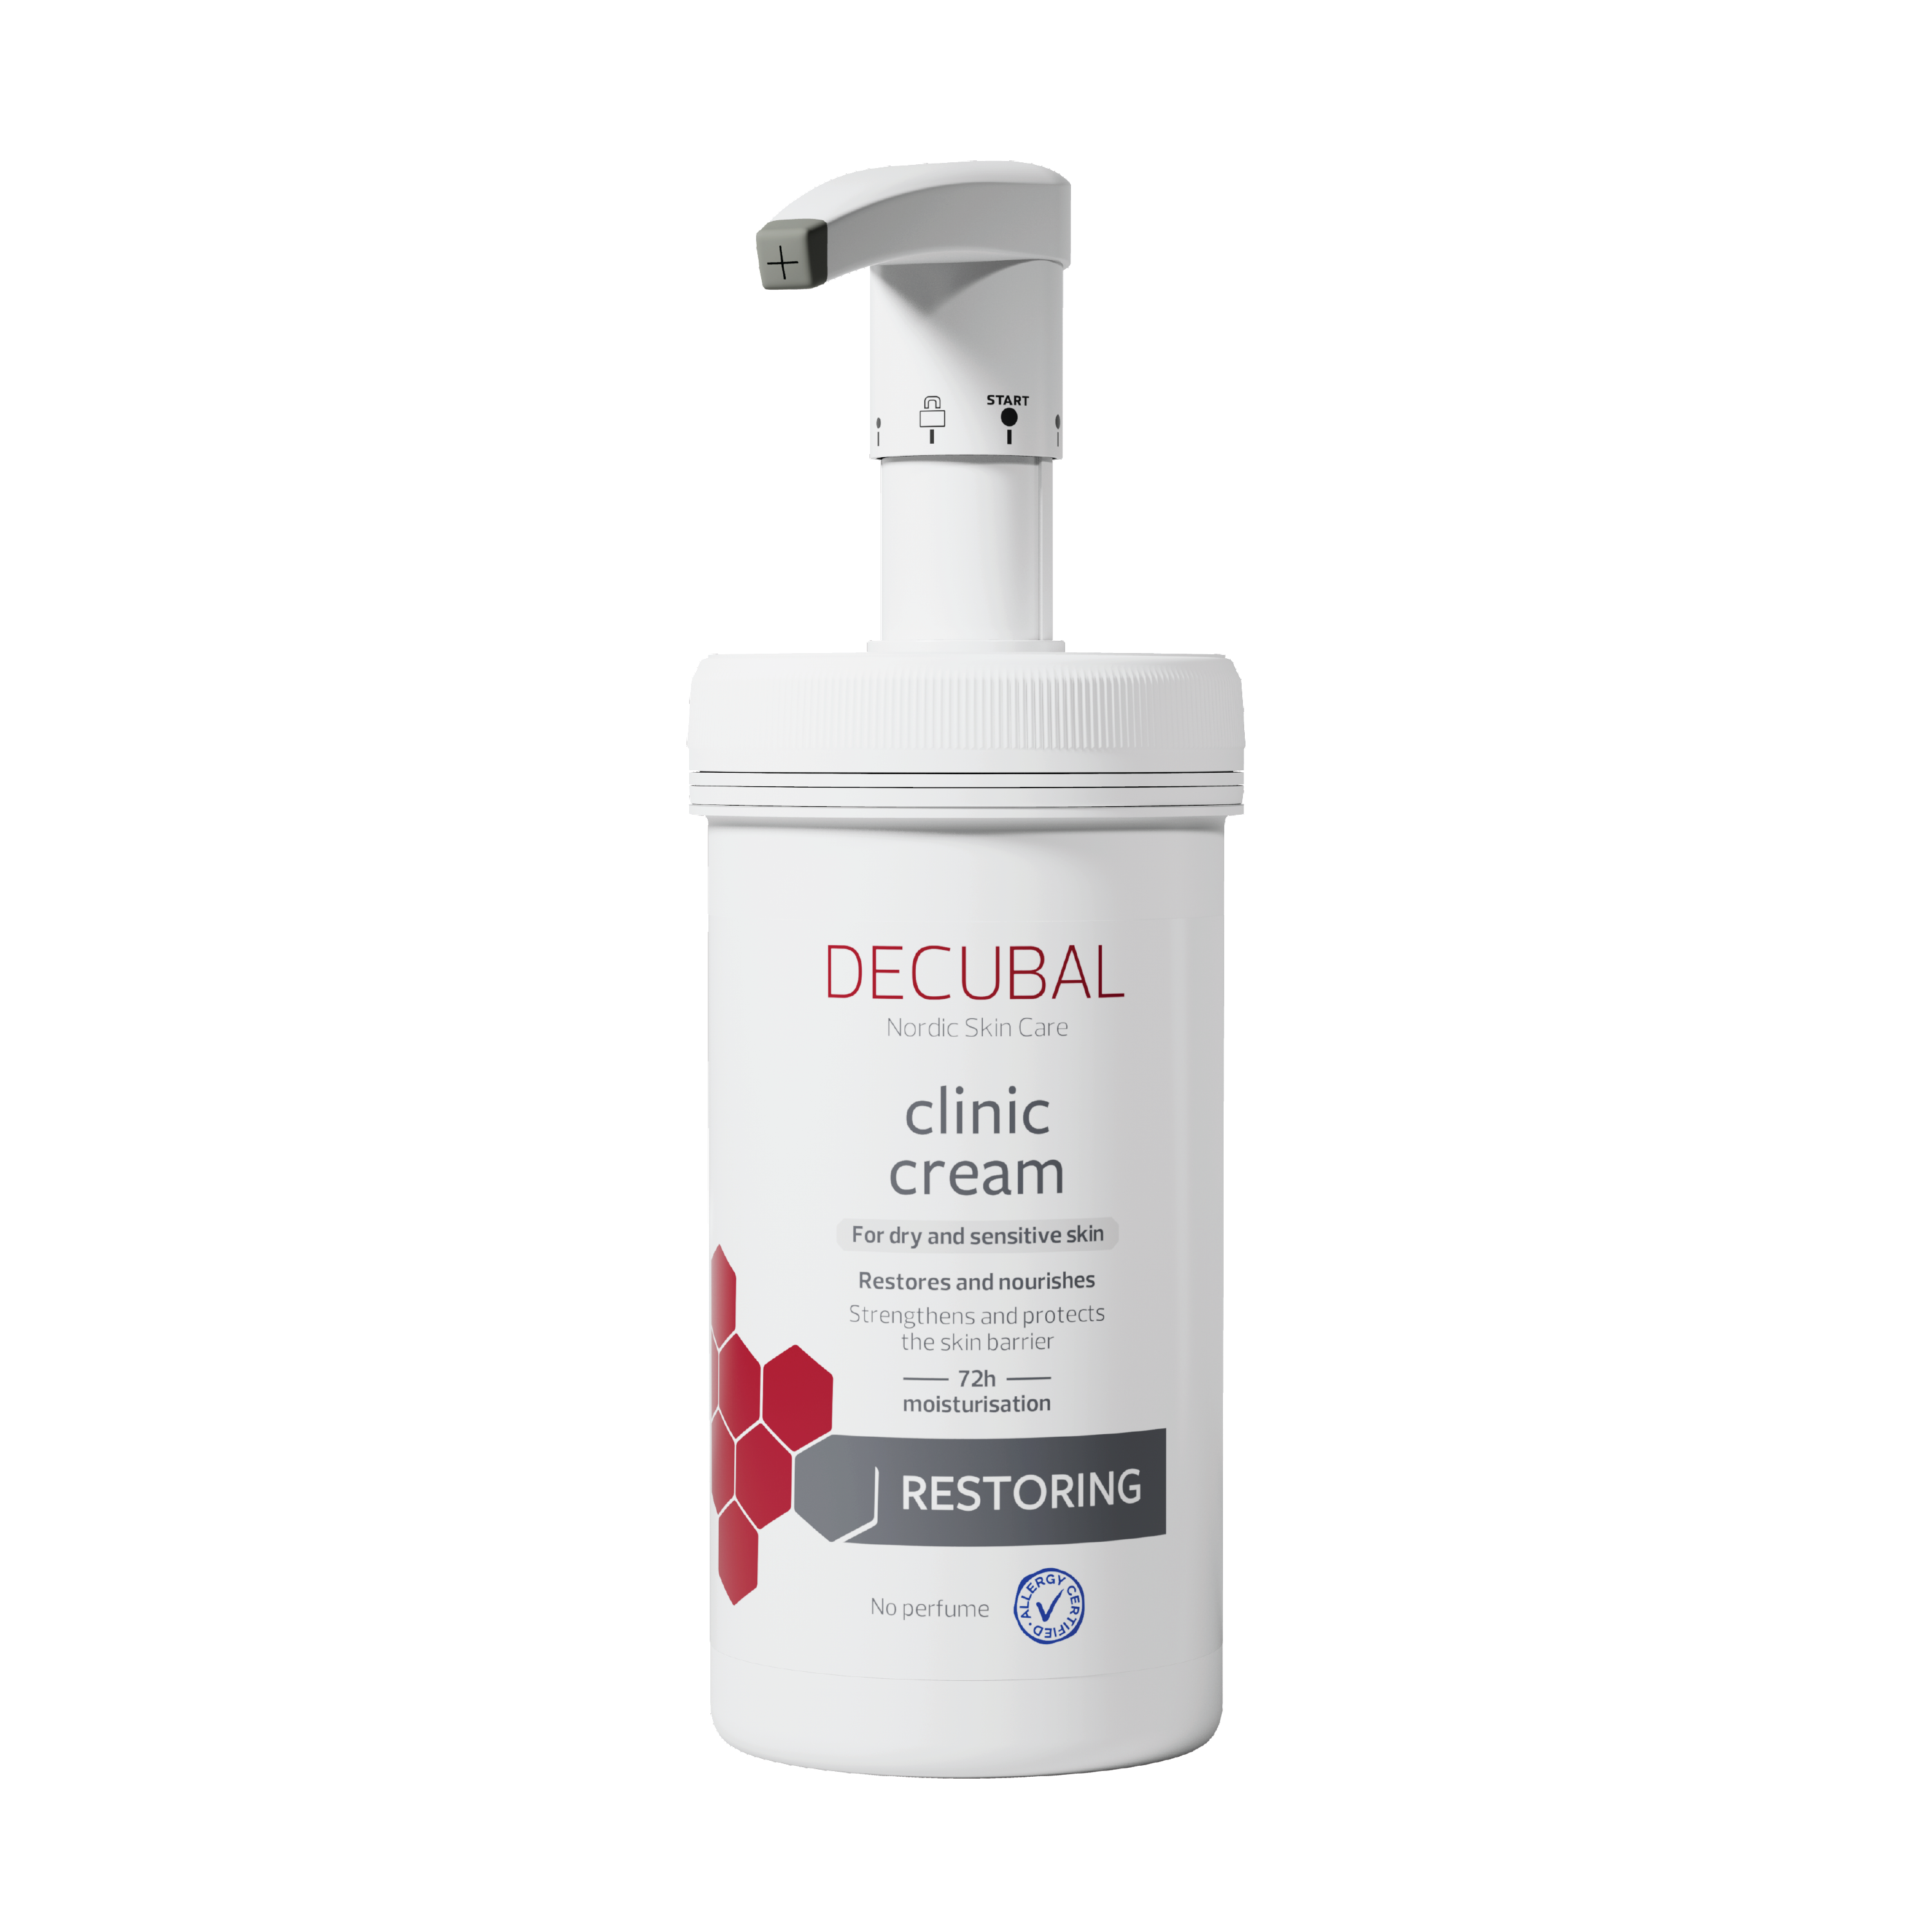 Decubal Original Clinic Cream Daily, 475 g